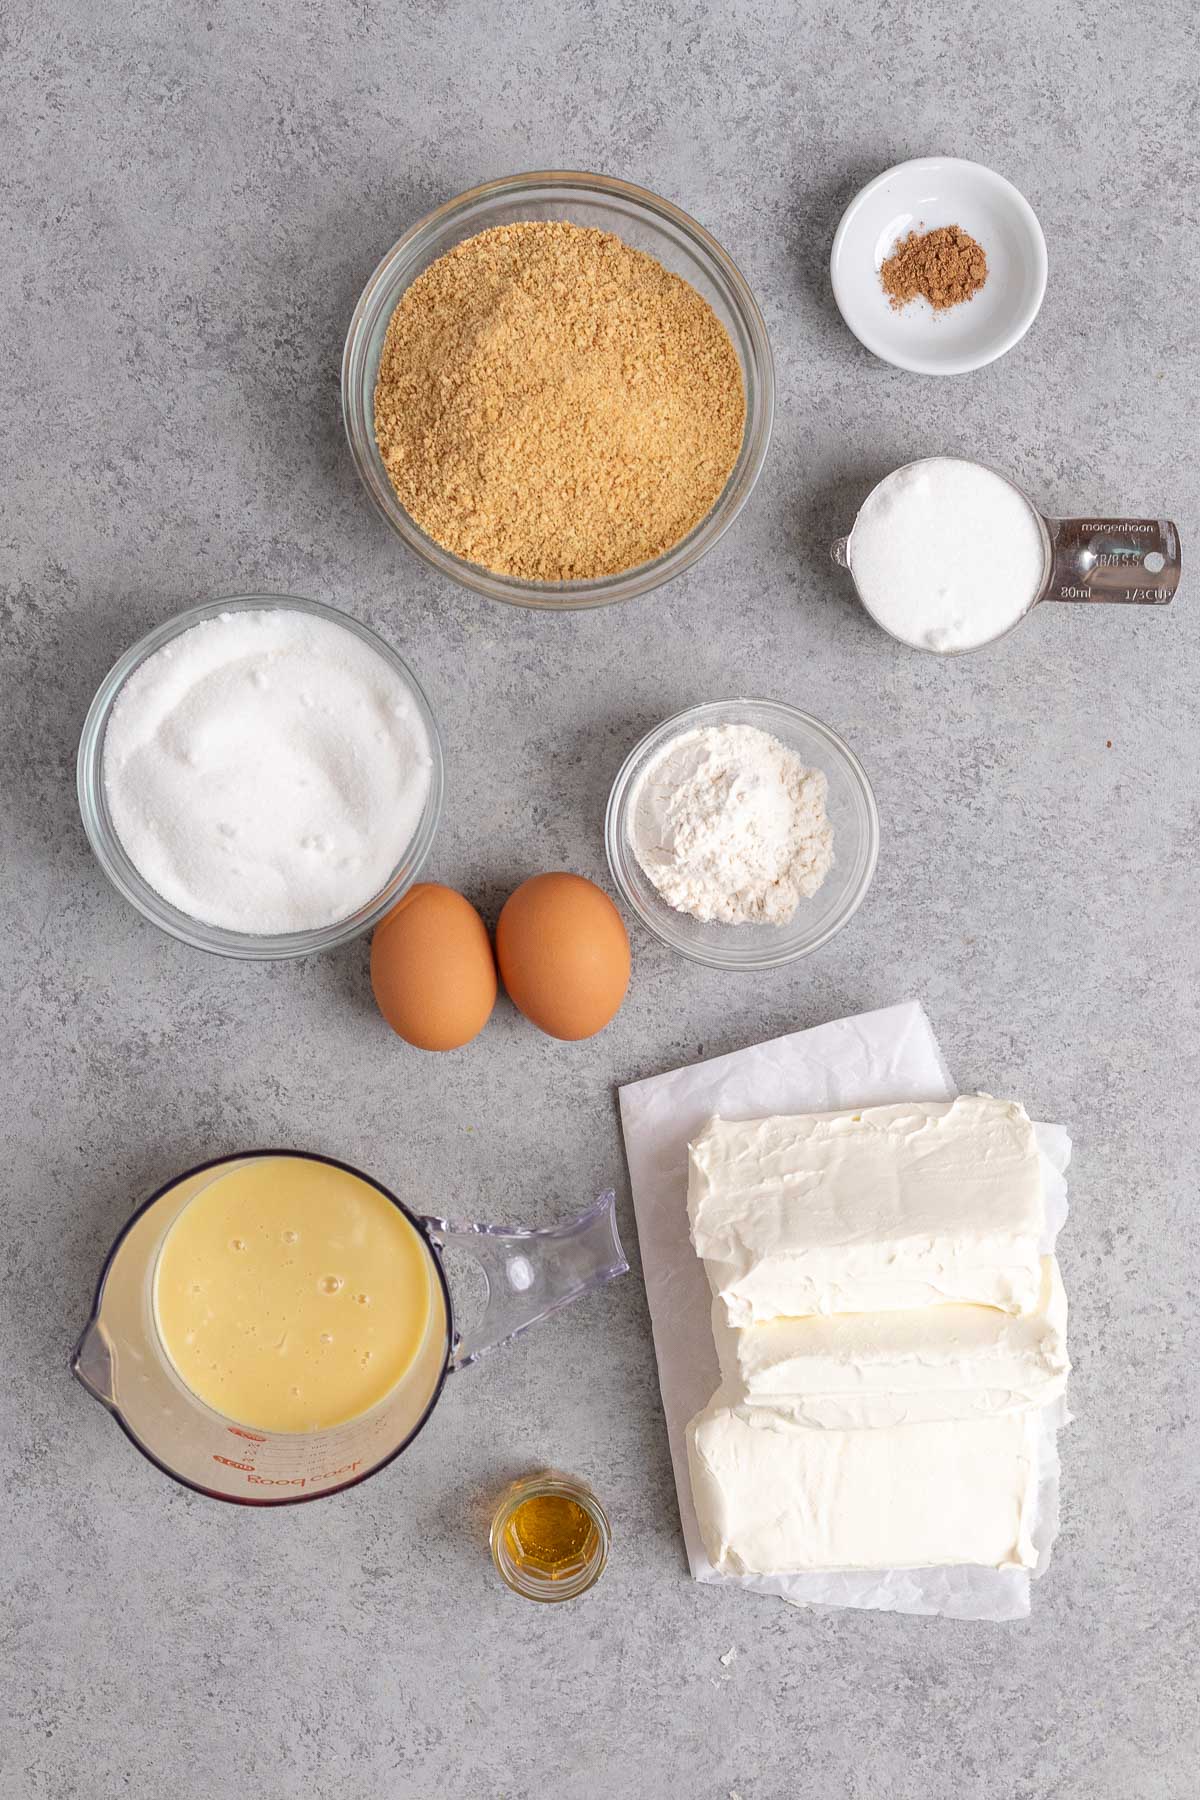 Eggnog Cheesecake ingredients in prep bowls